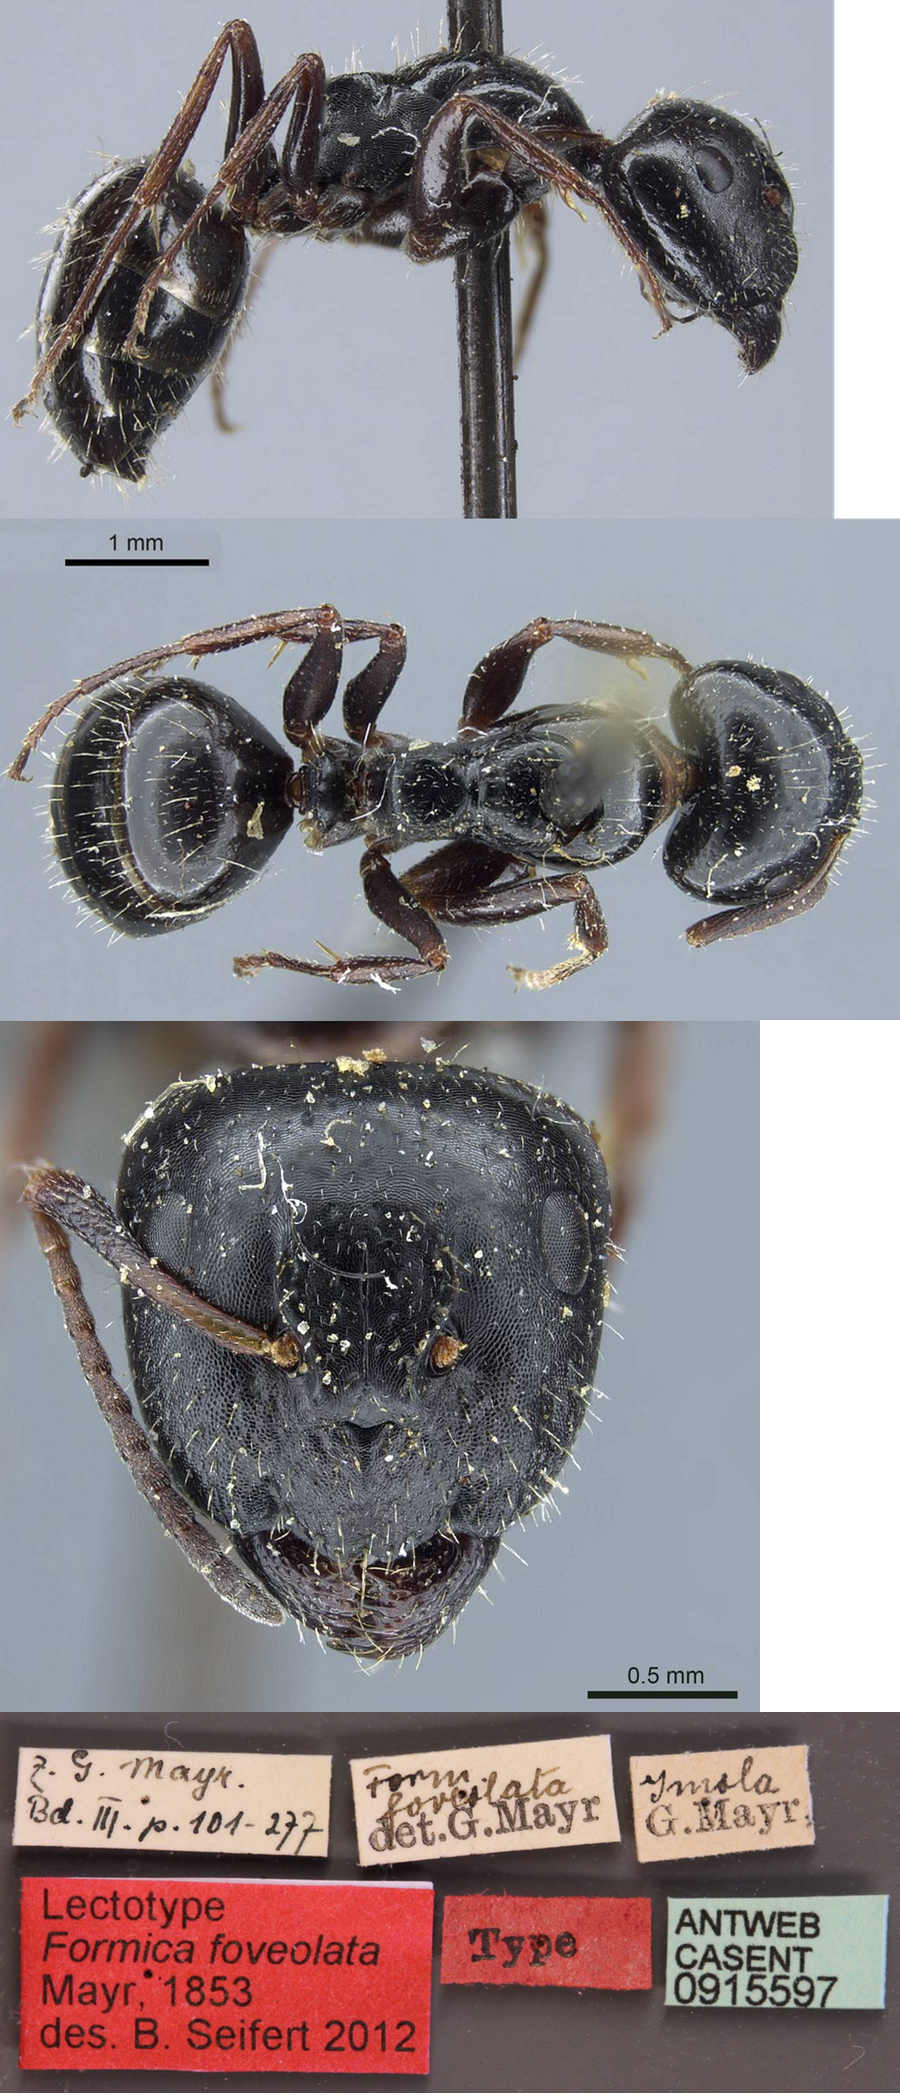 Camponotus piceus foveolatus major